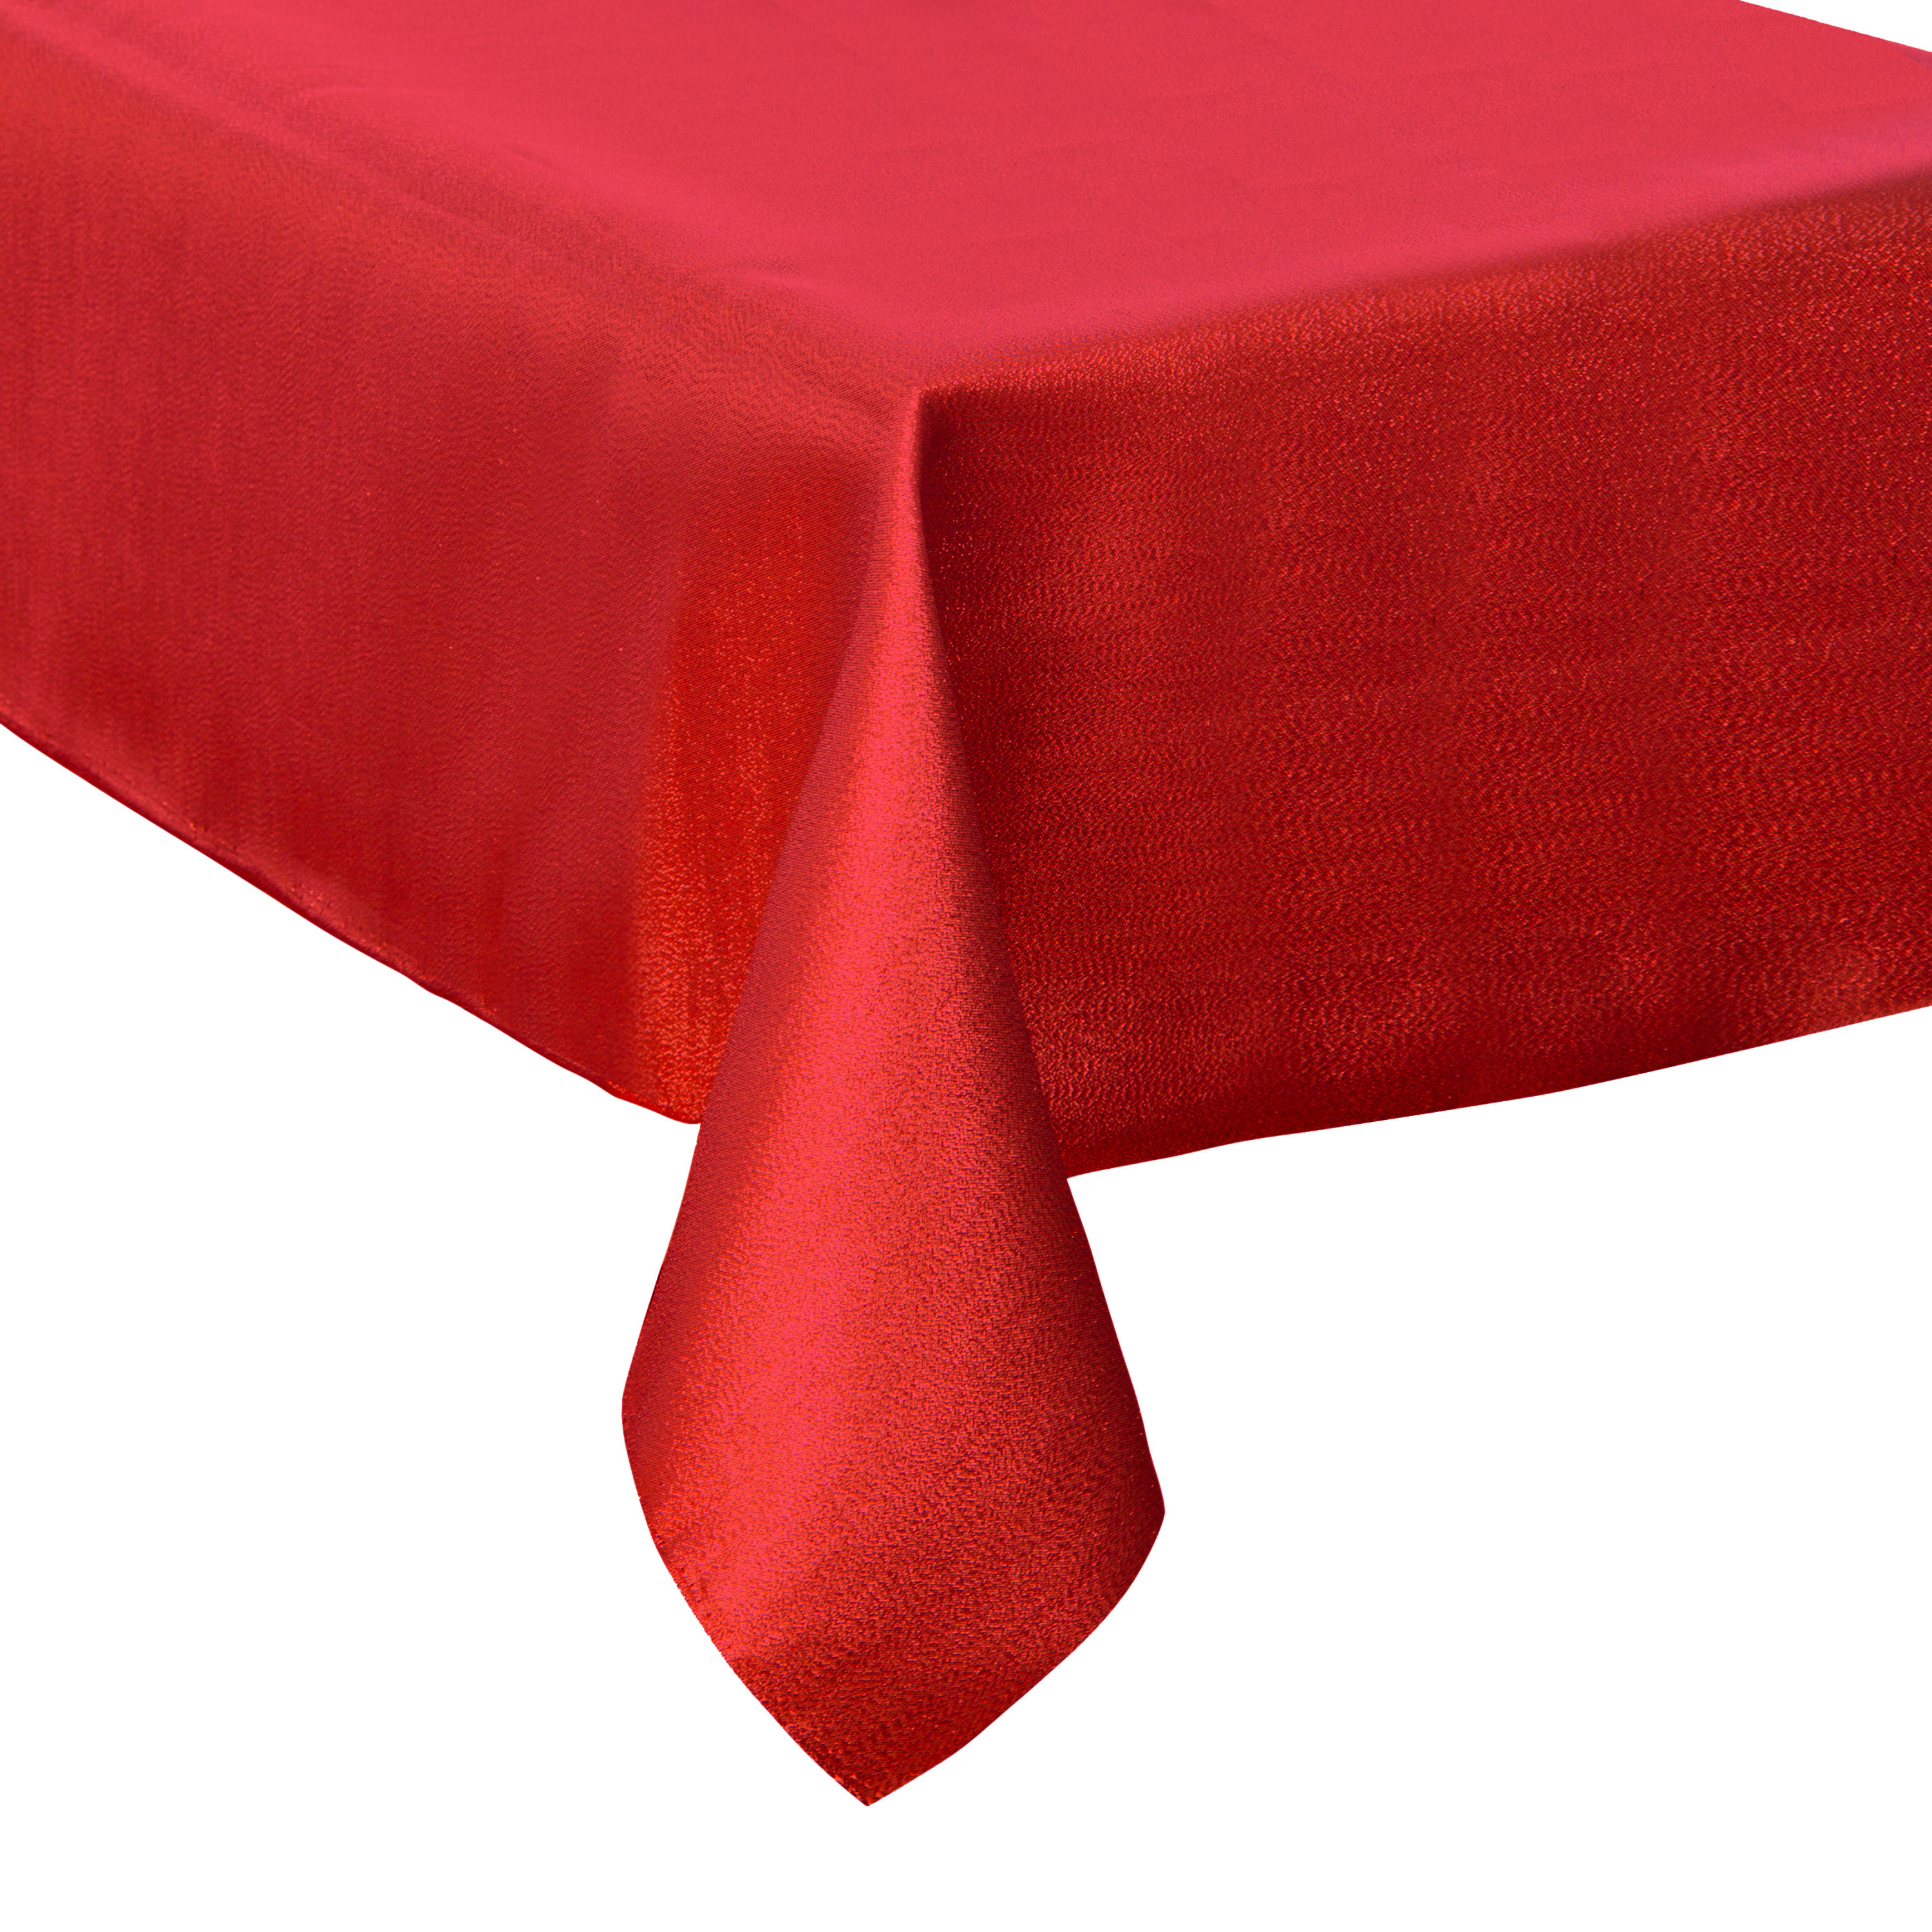 Tafelkleed/tafellaken rood sparkling effect van polyester formaat 140 x 240 cm